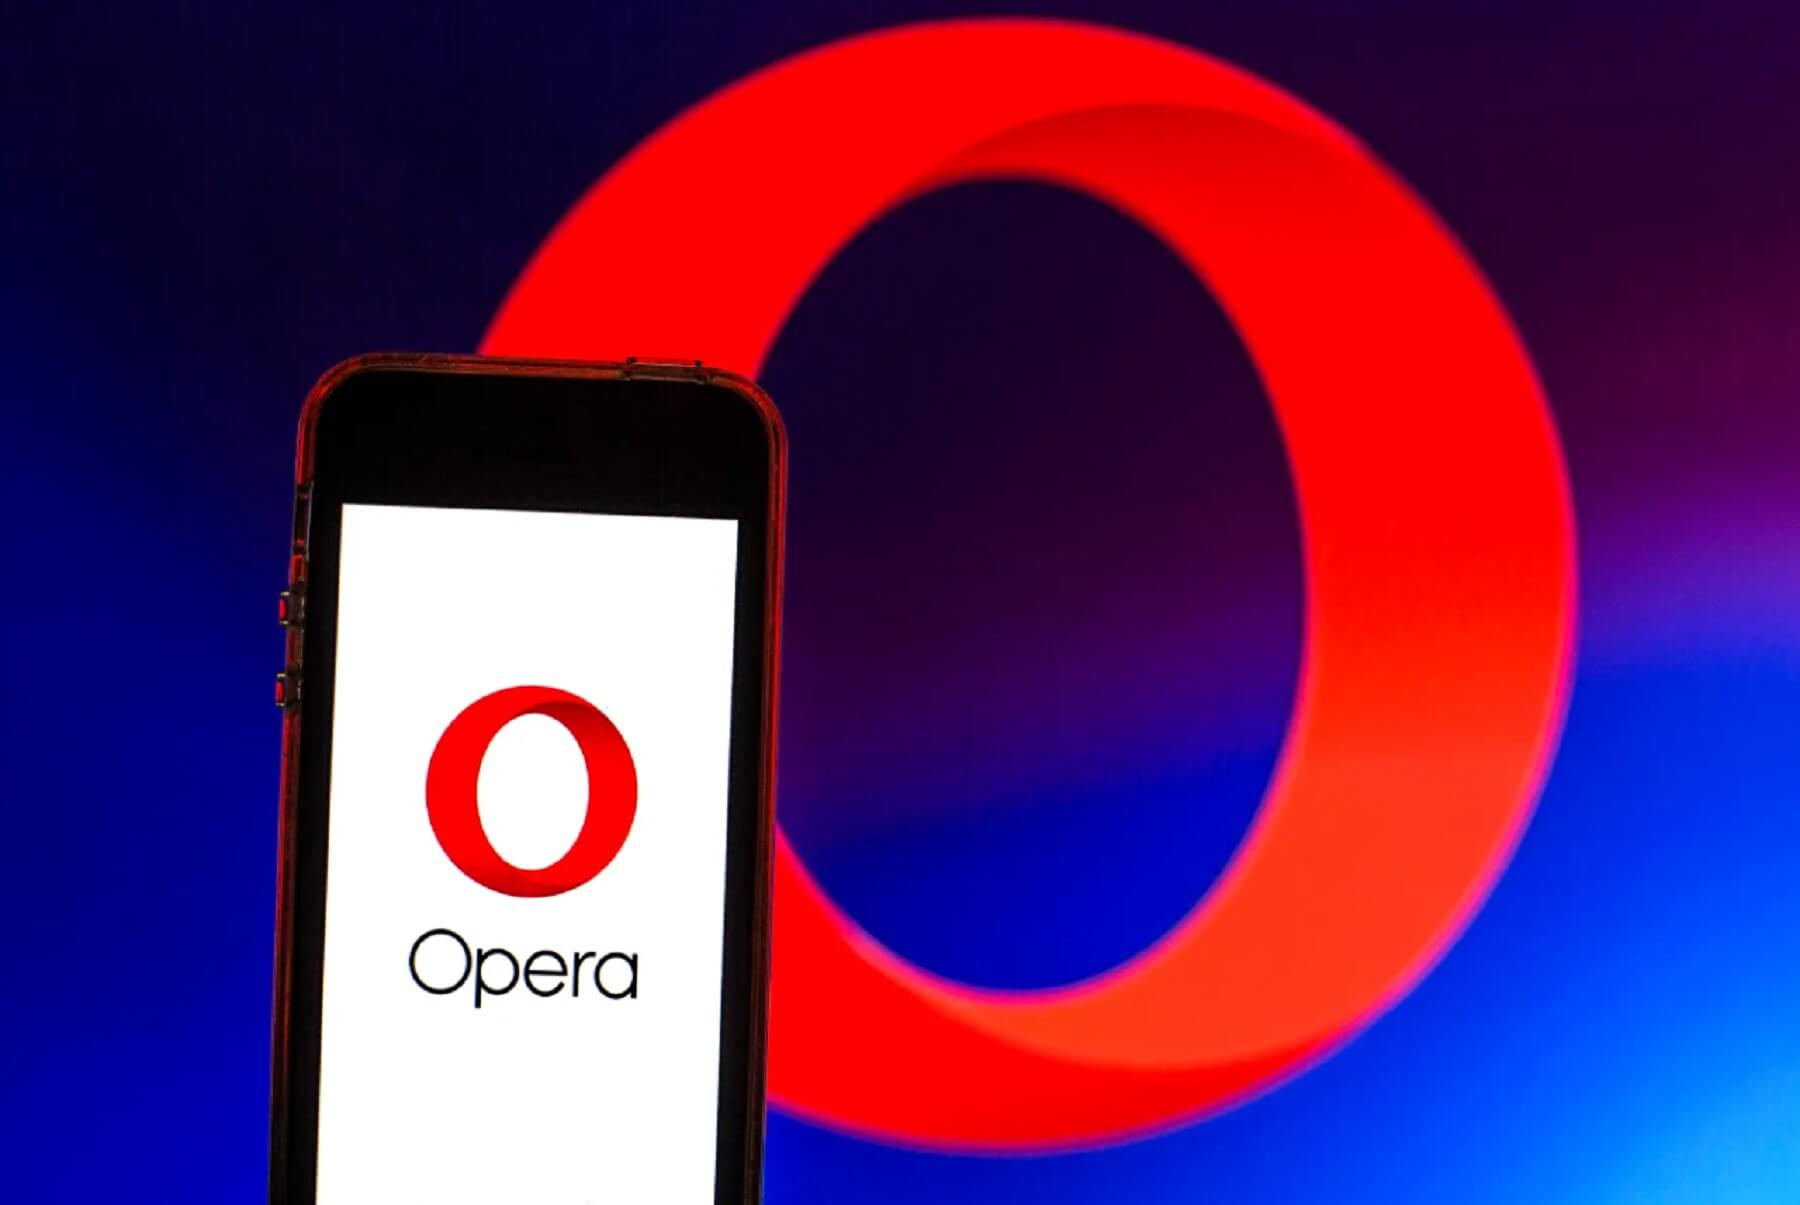 Помічник з ШІ від Opera підсумовує інформацію веб-сторінок